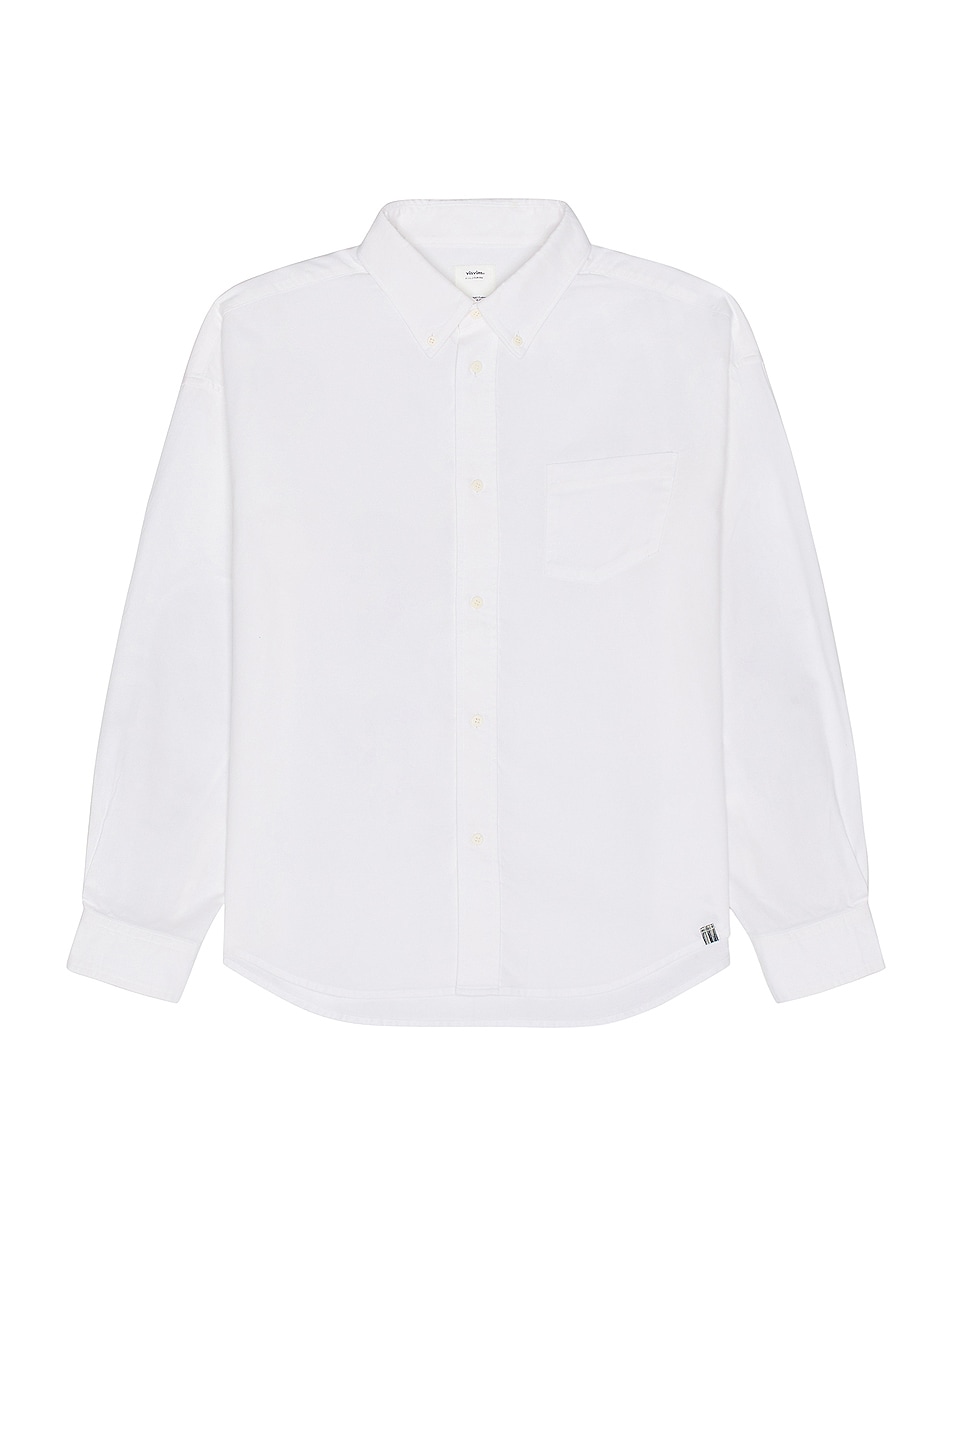 Image 1 of Visvim Albacore B.d. Long Sleeve Shirt in White